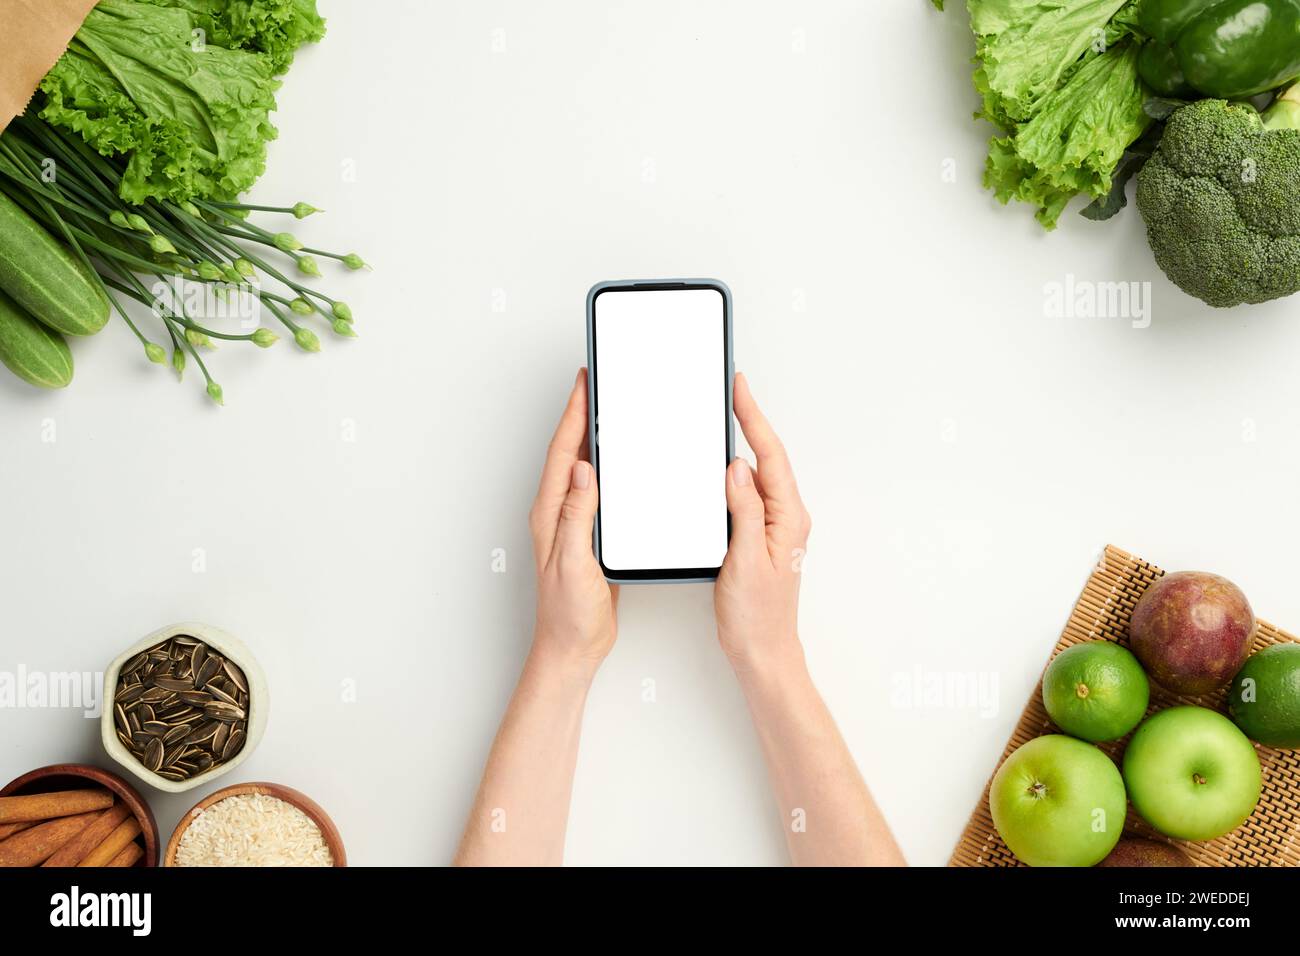 Mains de la personne tenant smartphone avec écran vide lors de la commande de fruits et légumes frais en ligne Banque D'Images